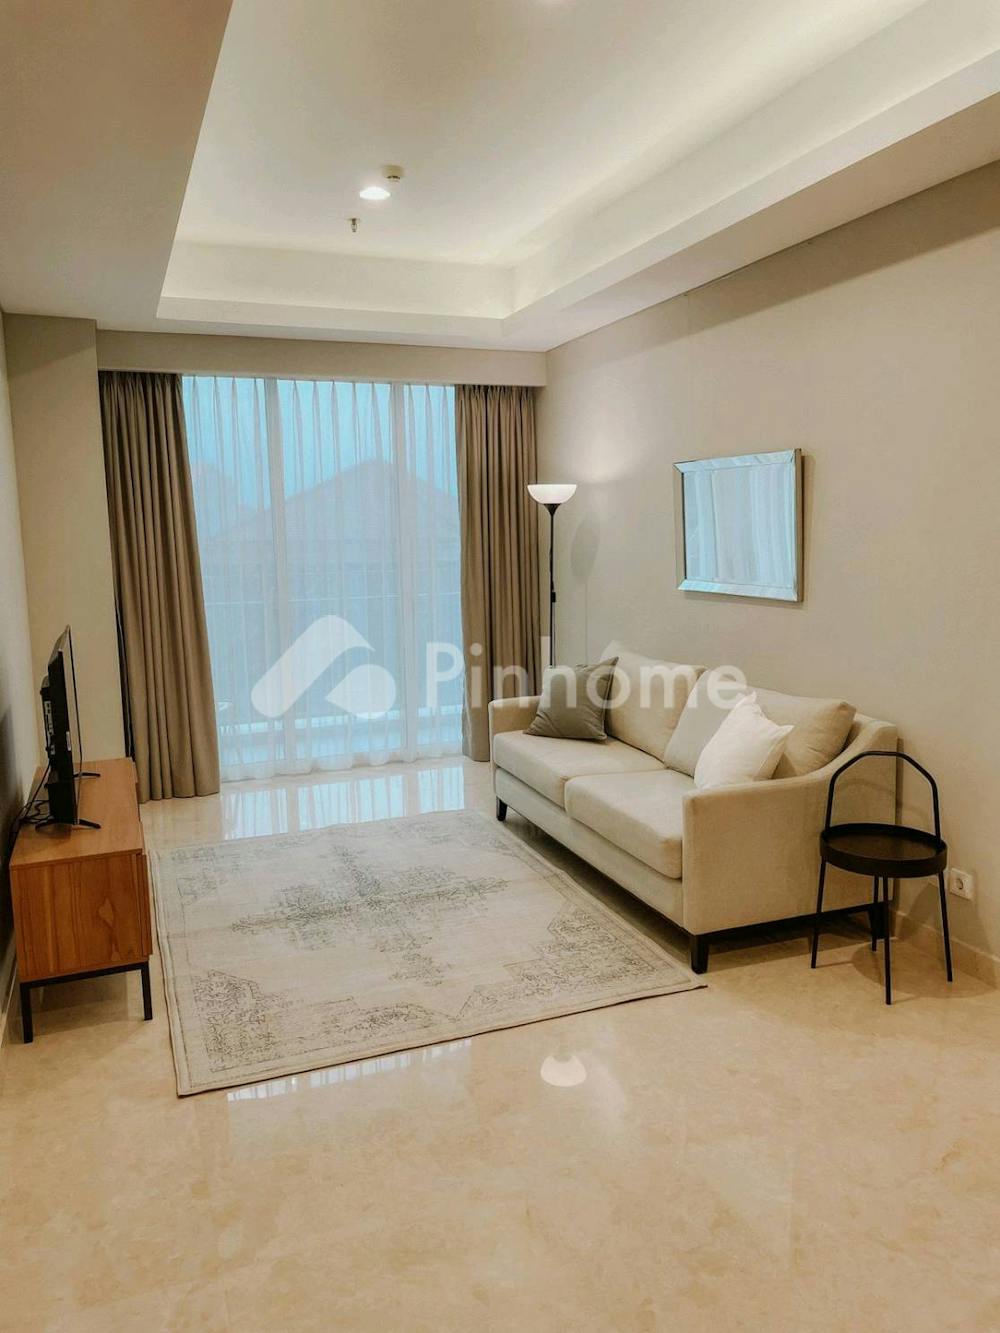 Disewakan Apartemen Jarang Ada di Apartment Pondok Indah Residence, Luas 90 m², 2 KT, Harga Rp22 Juta per Bulan | Pinhome